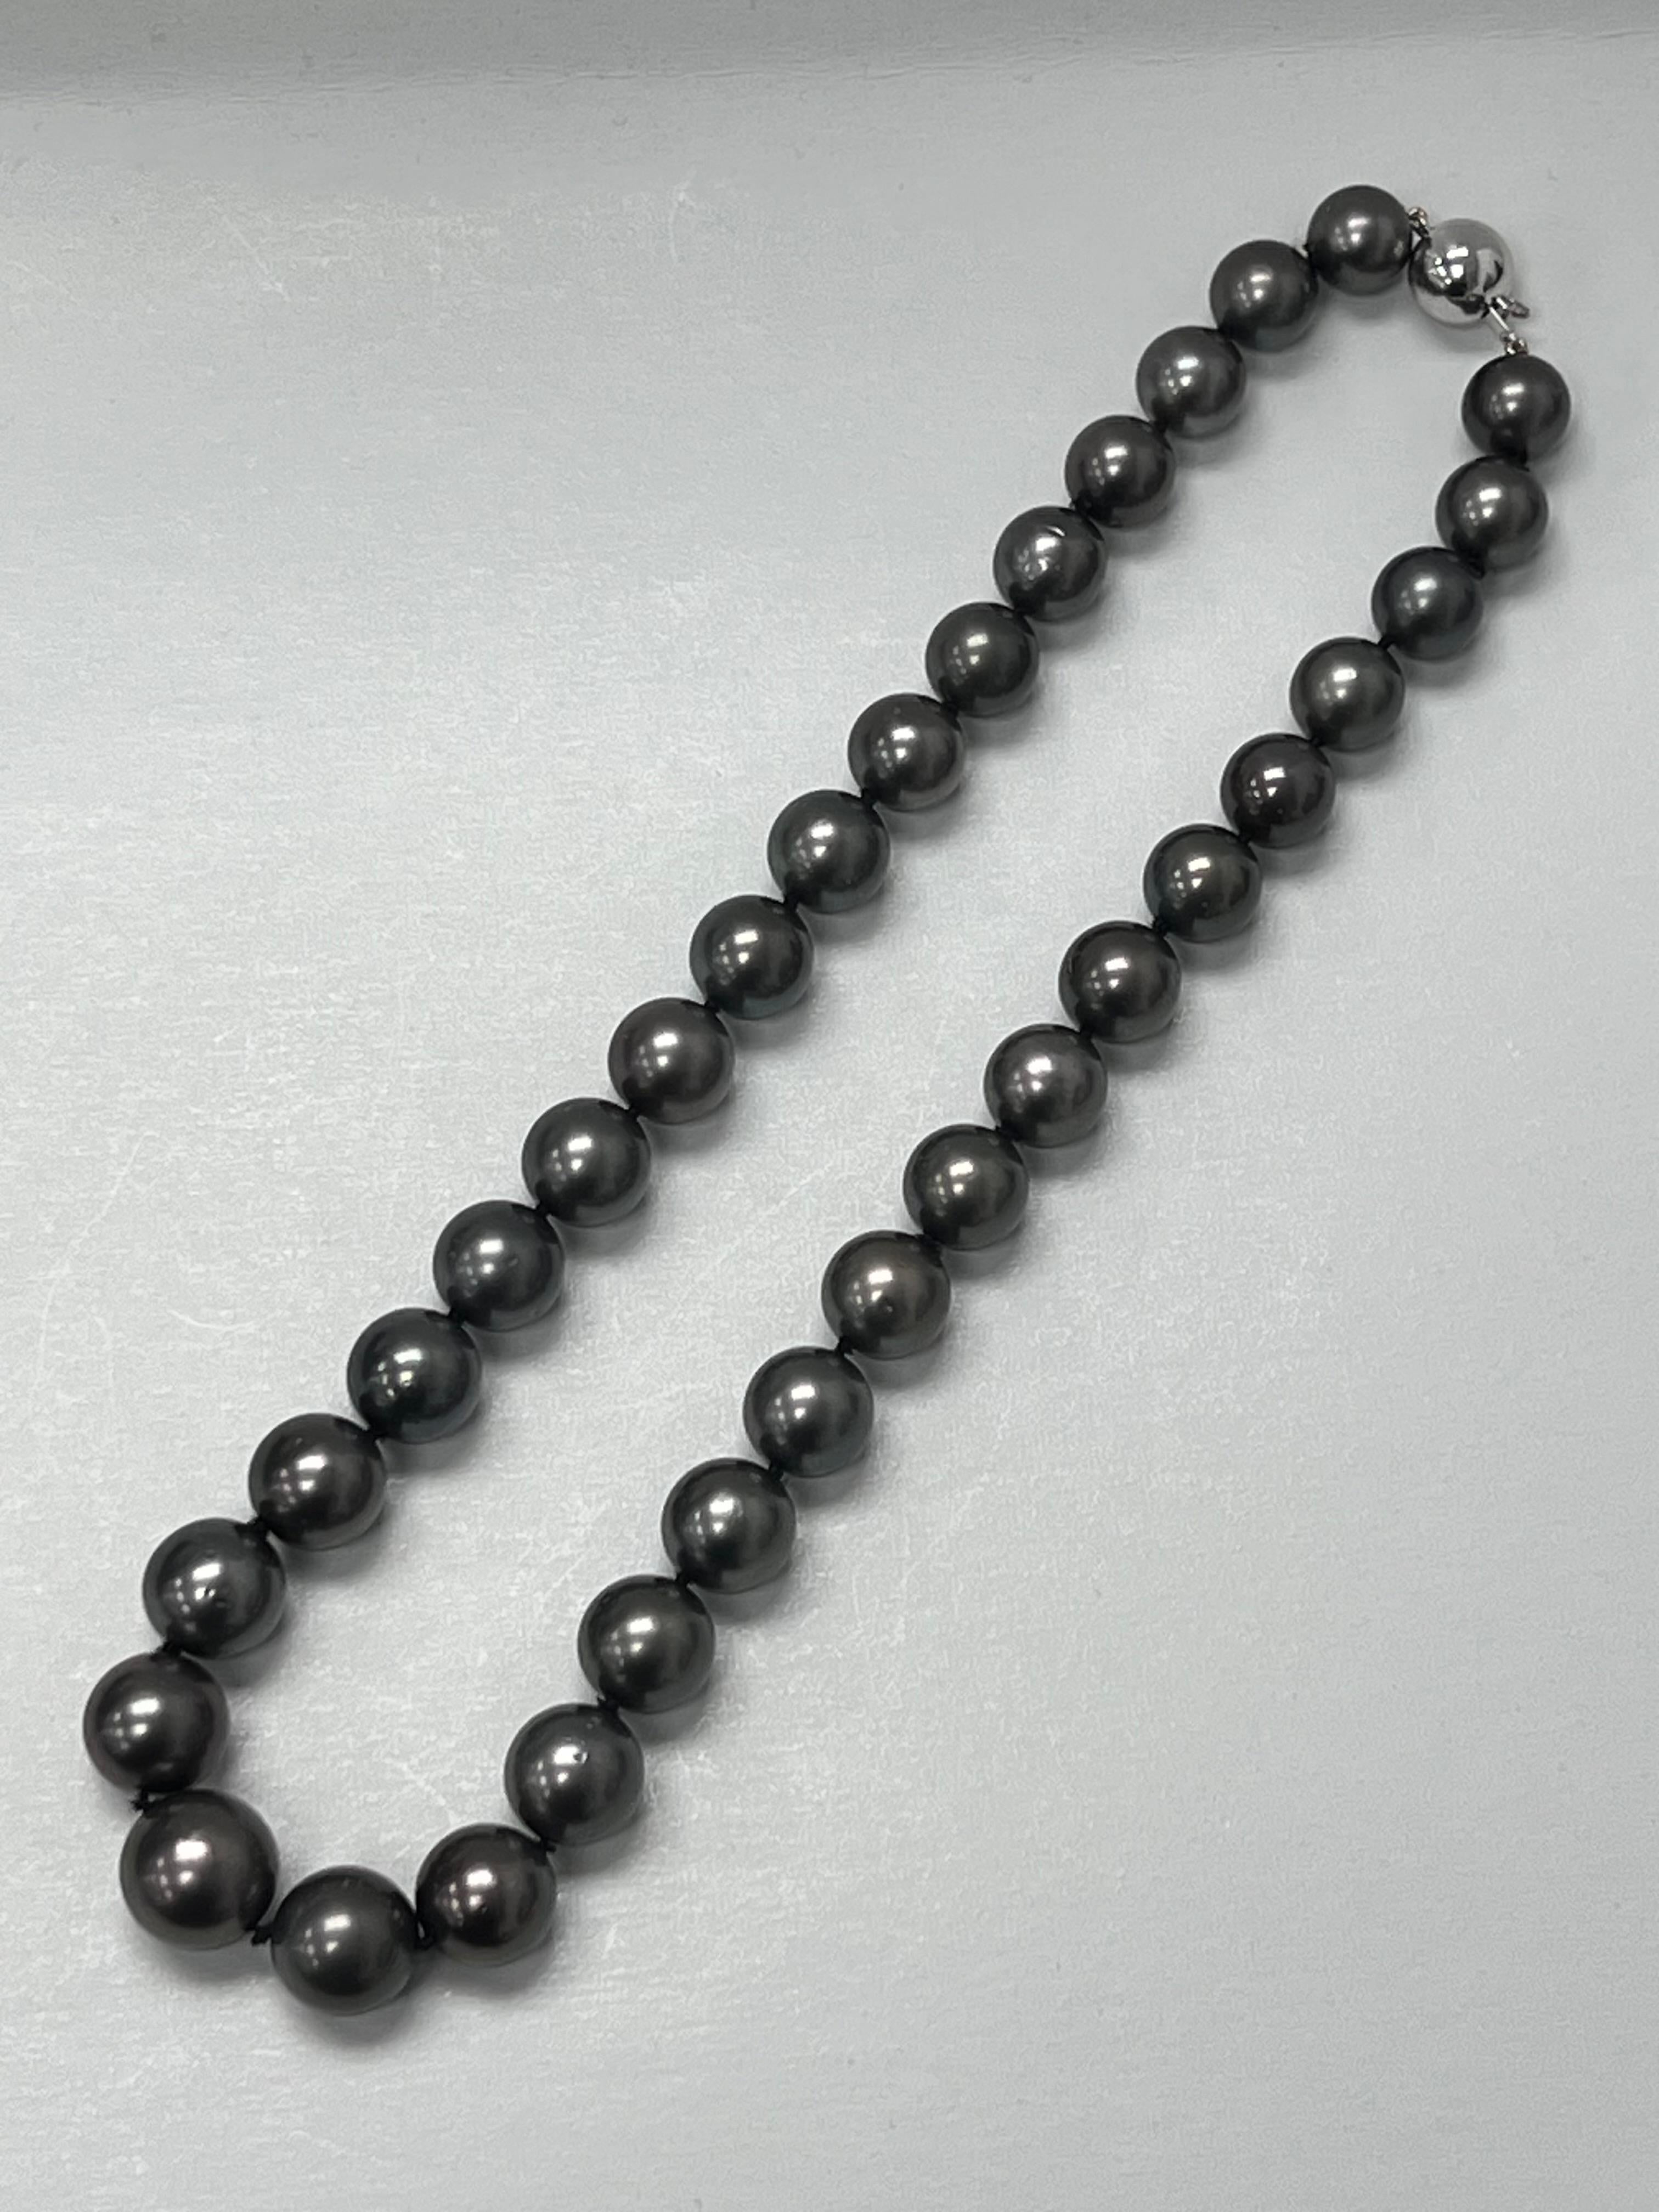 Stil und Glamour stehen bei dieser exquisiten Perlenkette aus Tahiti im Vordergrund. Dieses 14-karätige Collier mit rundem Schliff besteht aus 33 Perlen und einem Kugelverschluss aus massivem Weißgold. Die Größe der Perlen beträgt 10,7 - 14,2 mm.